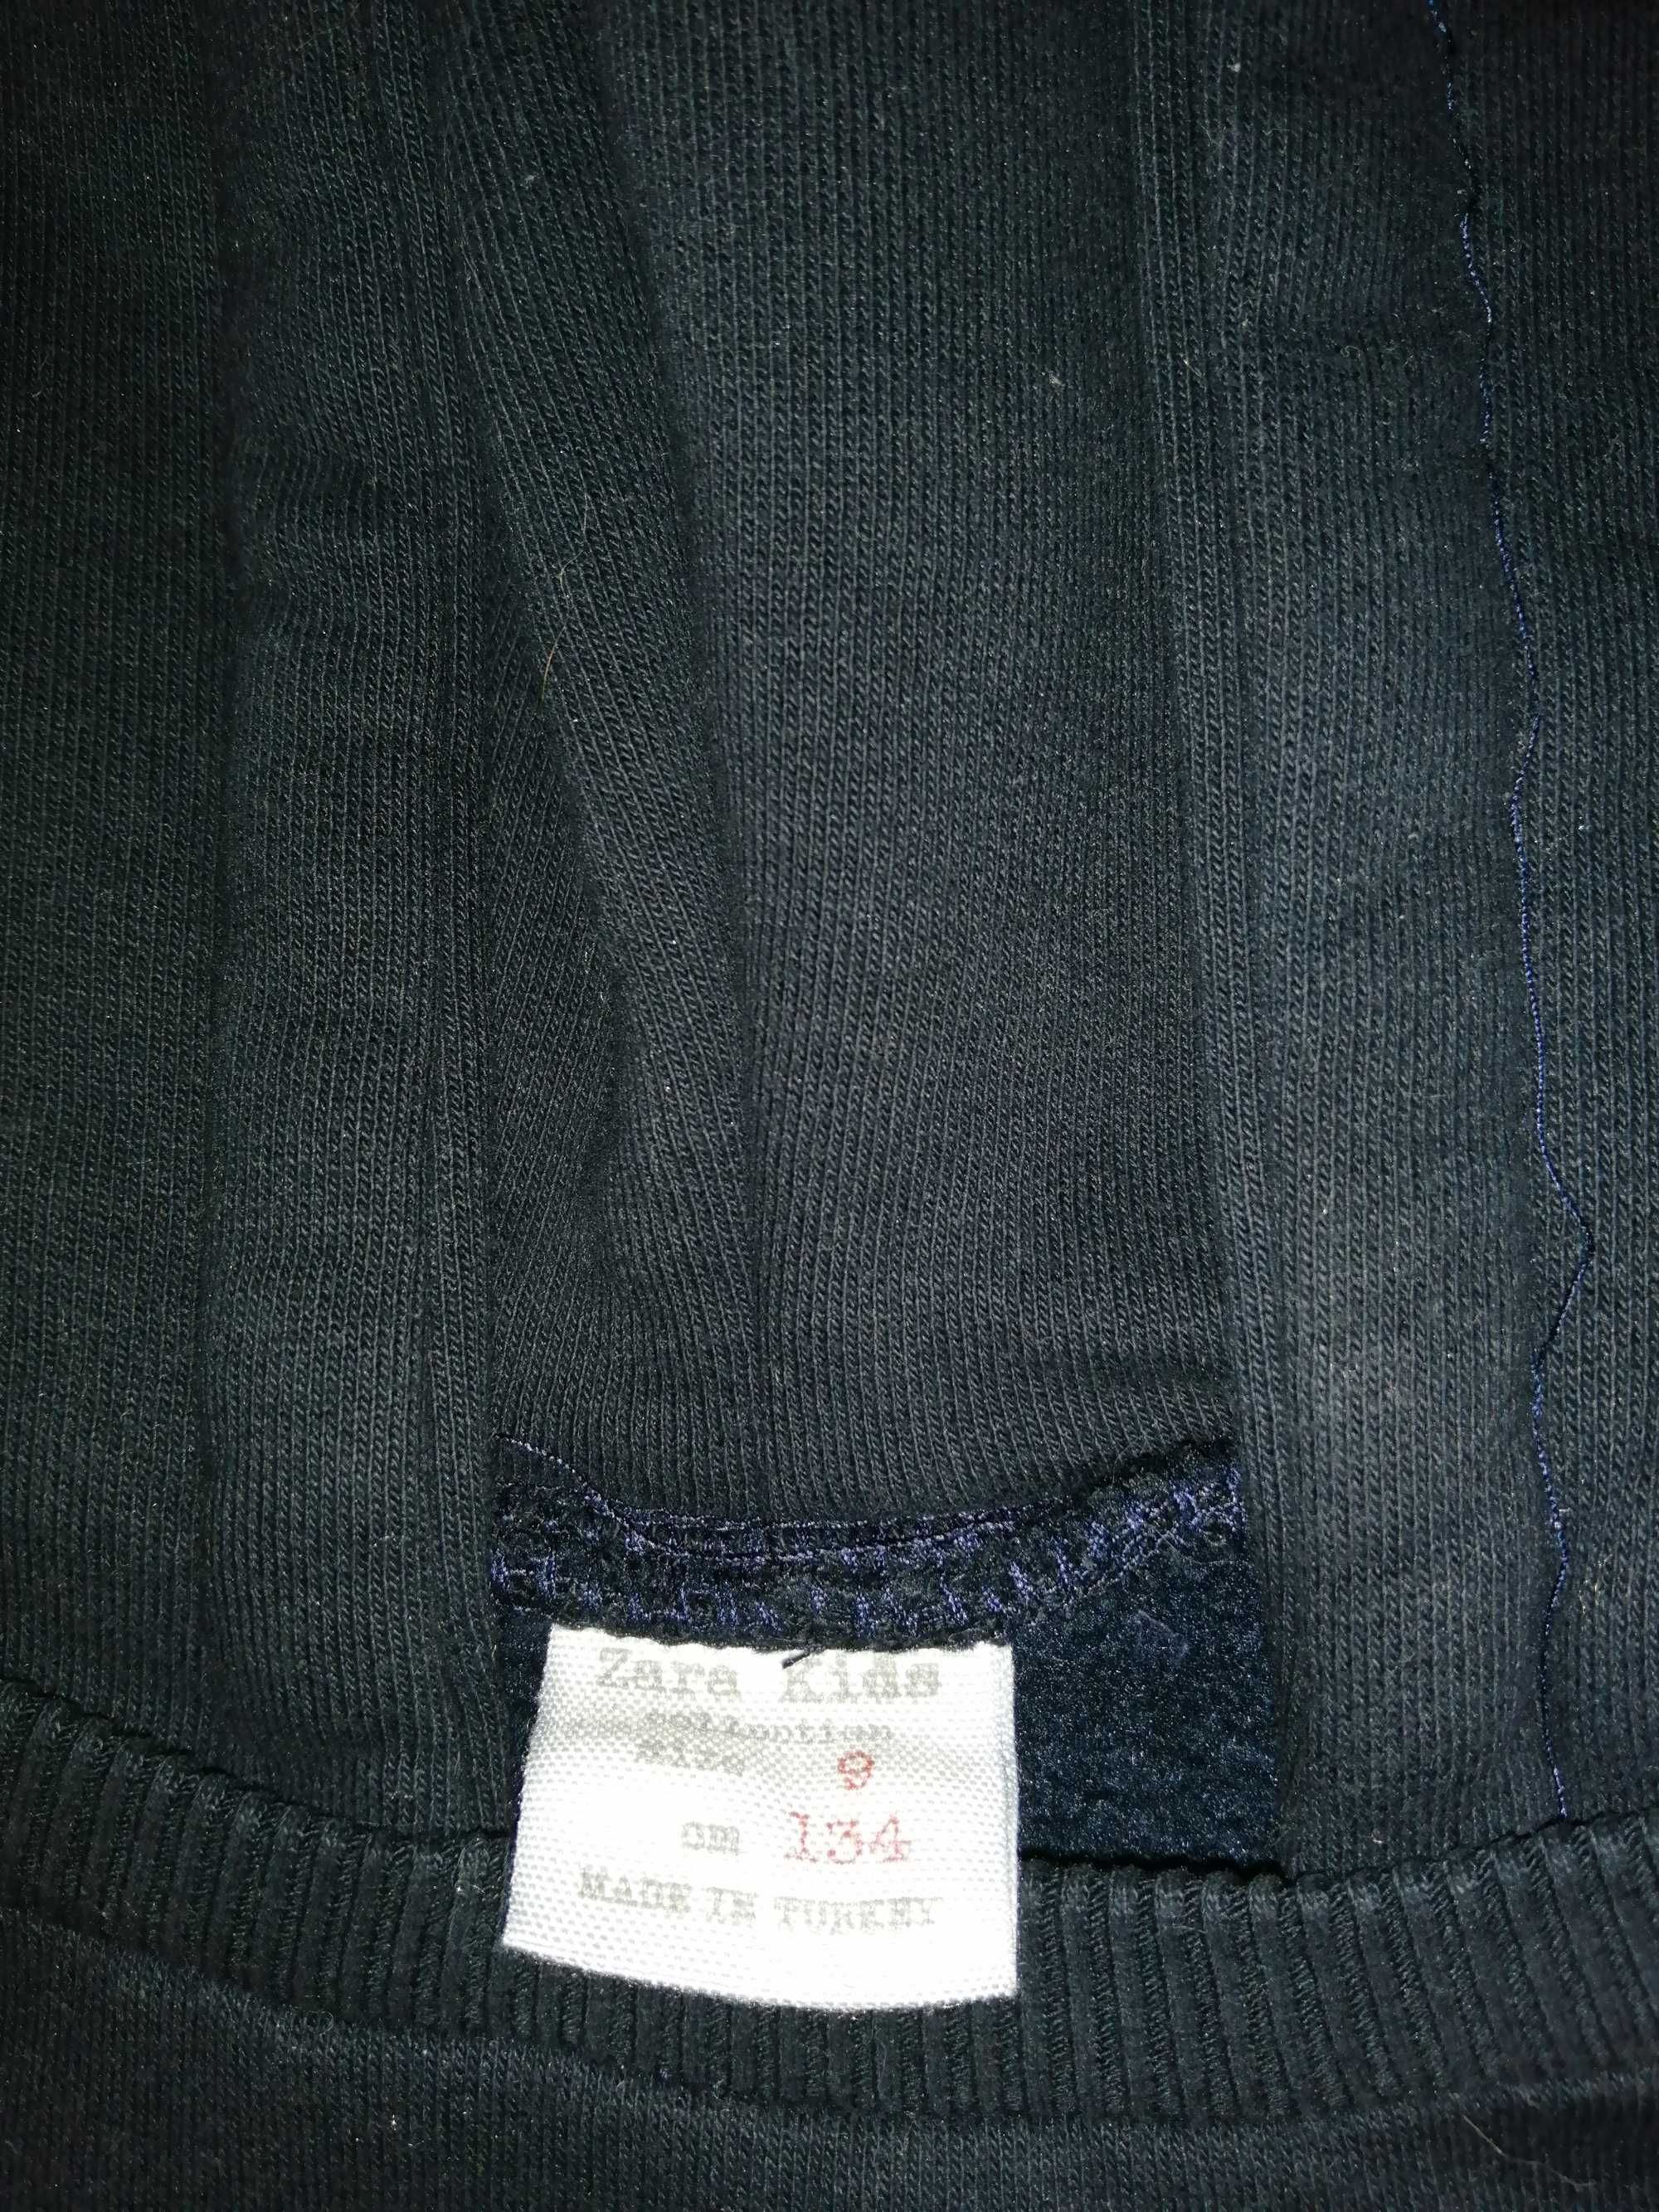 Bluza dziewczęca Zara r. 134